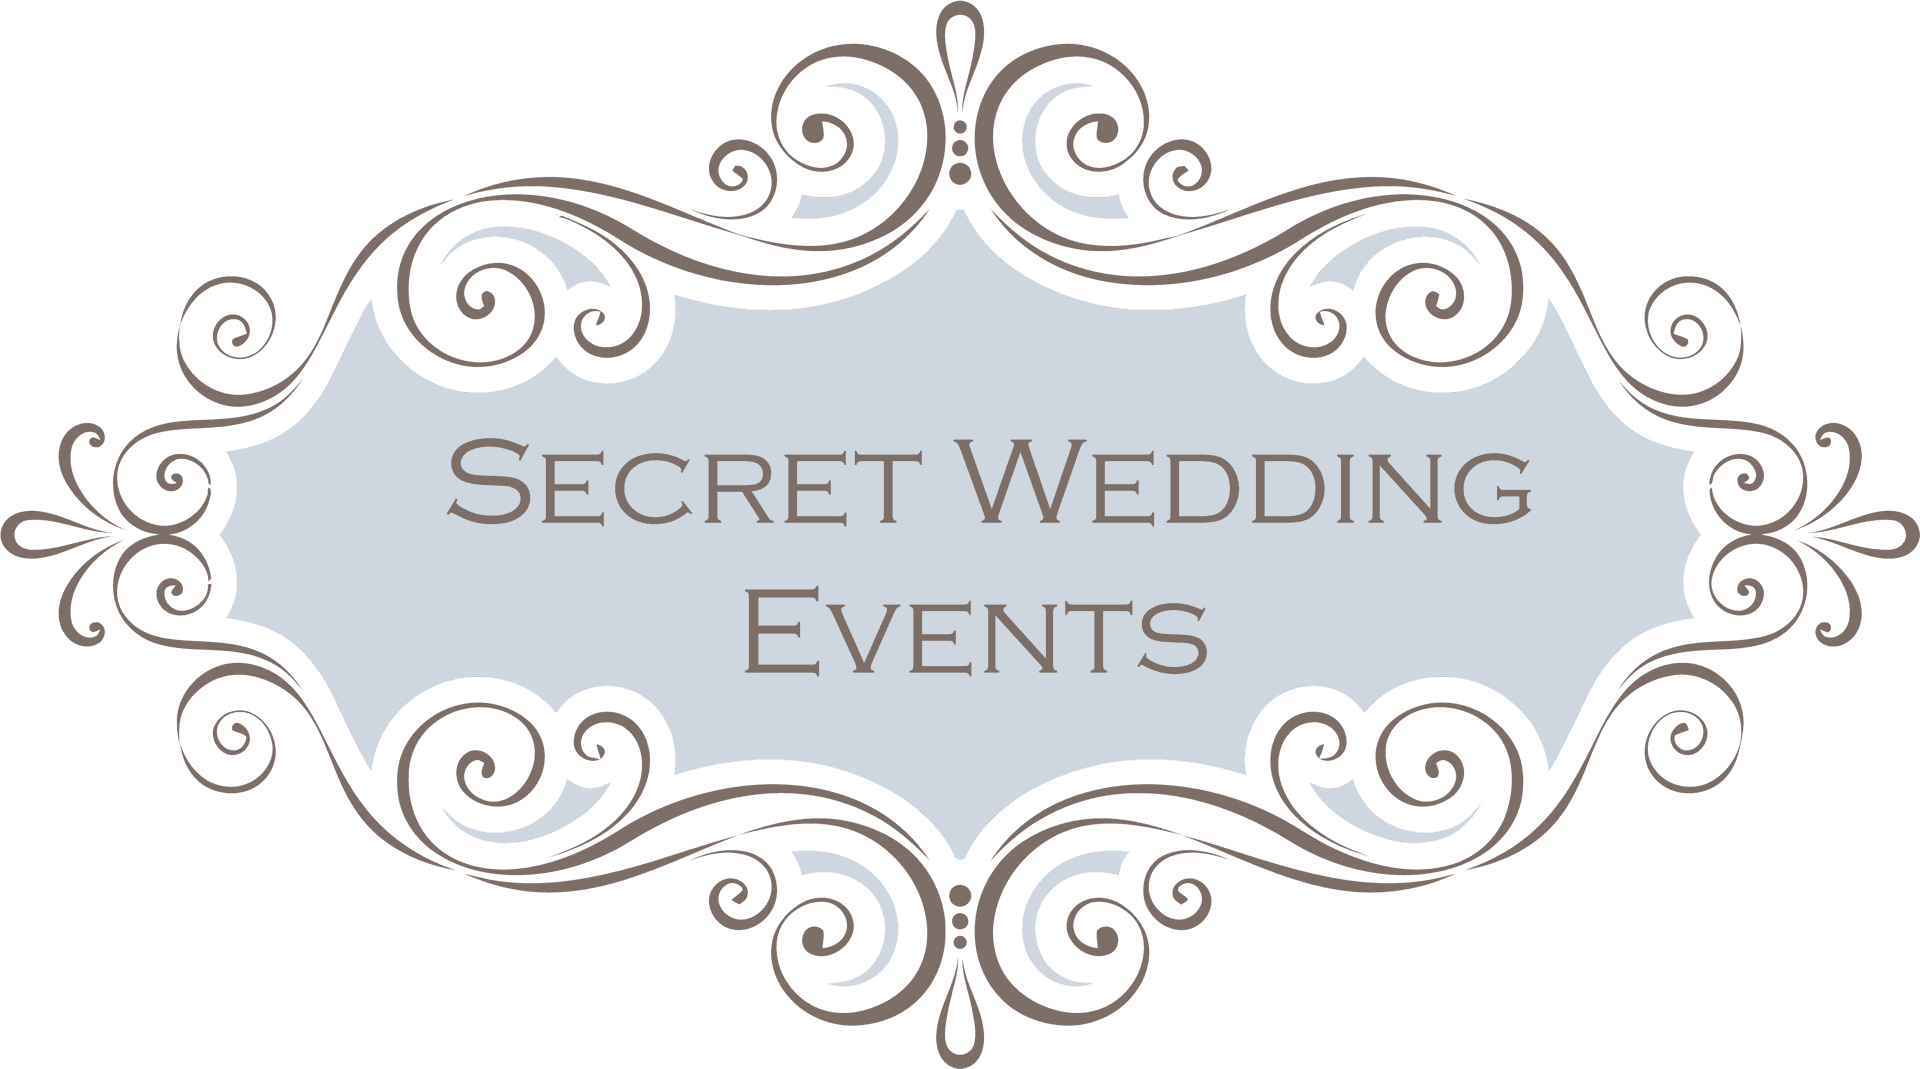 Secret Wedding Events Logo PNG image